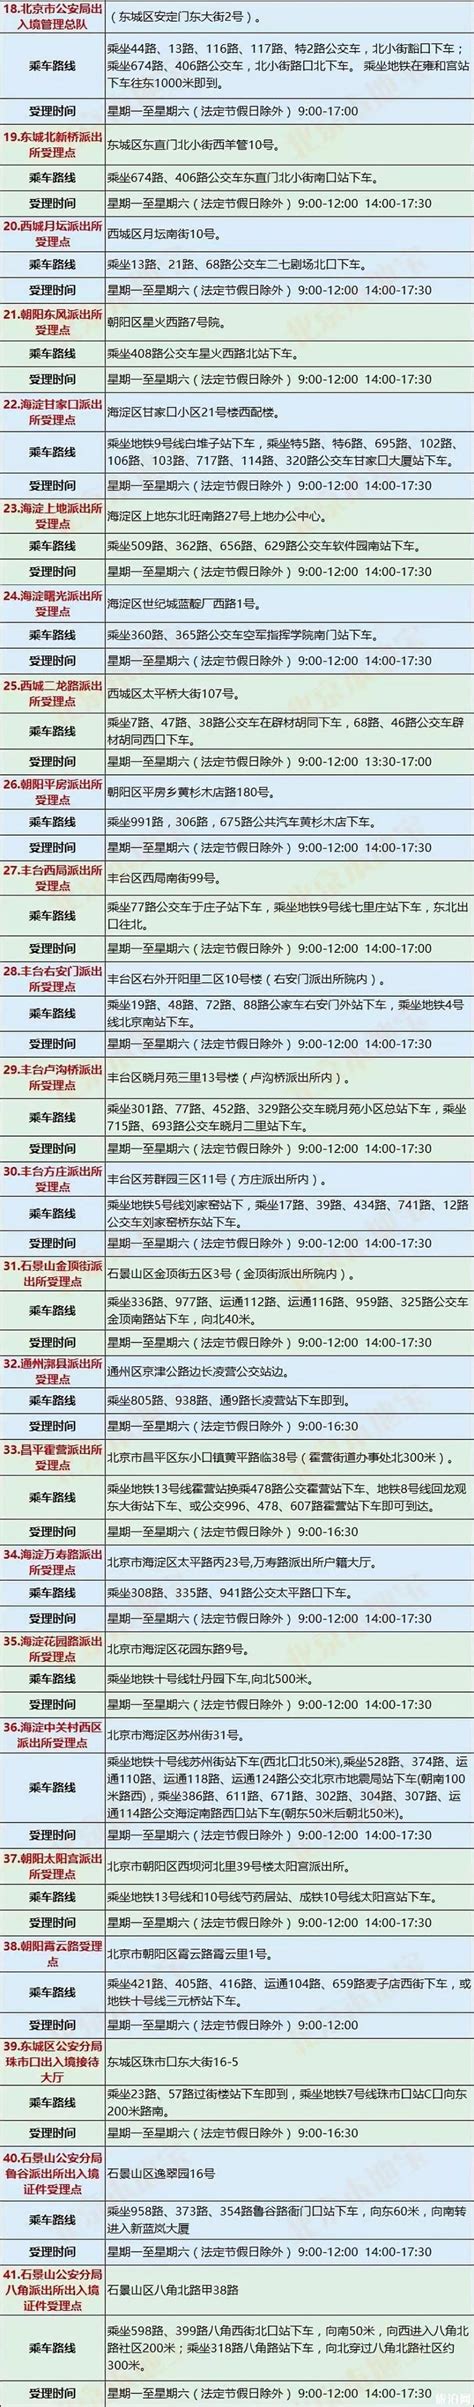 北京办护照加急多少天 2019北京护照办理地点+时间+材料+流程_旅泊网